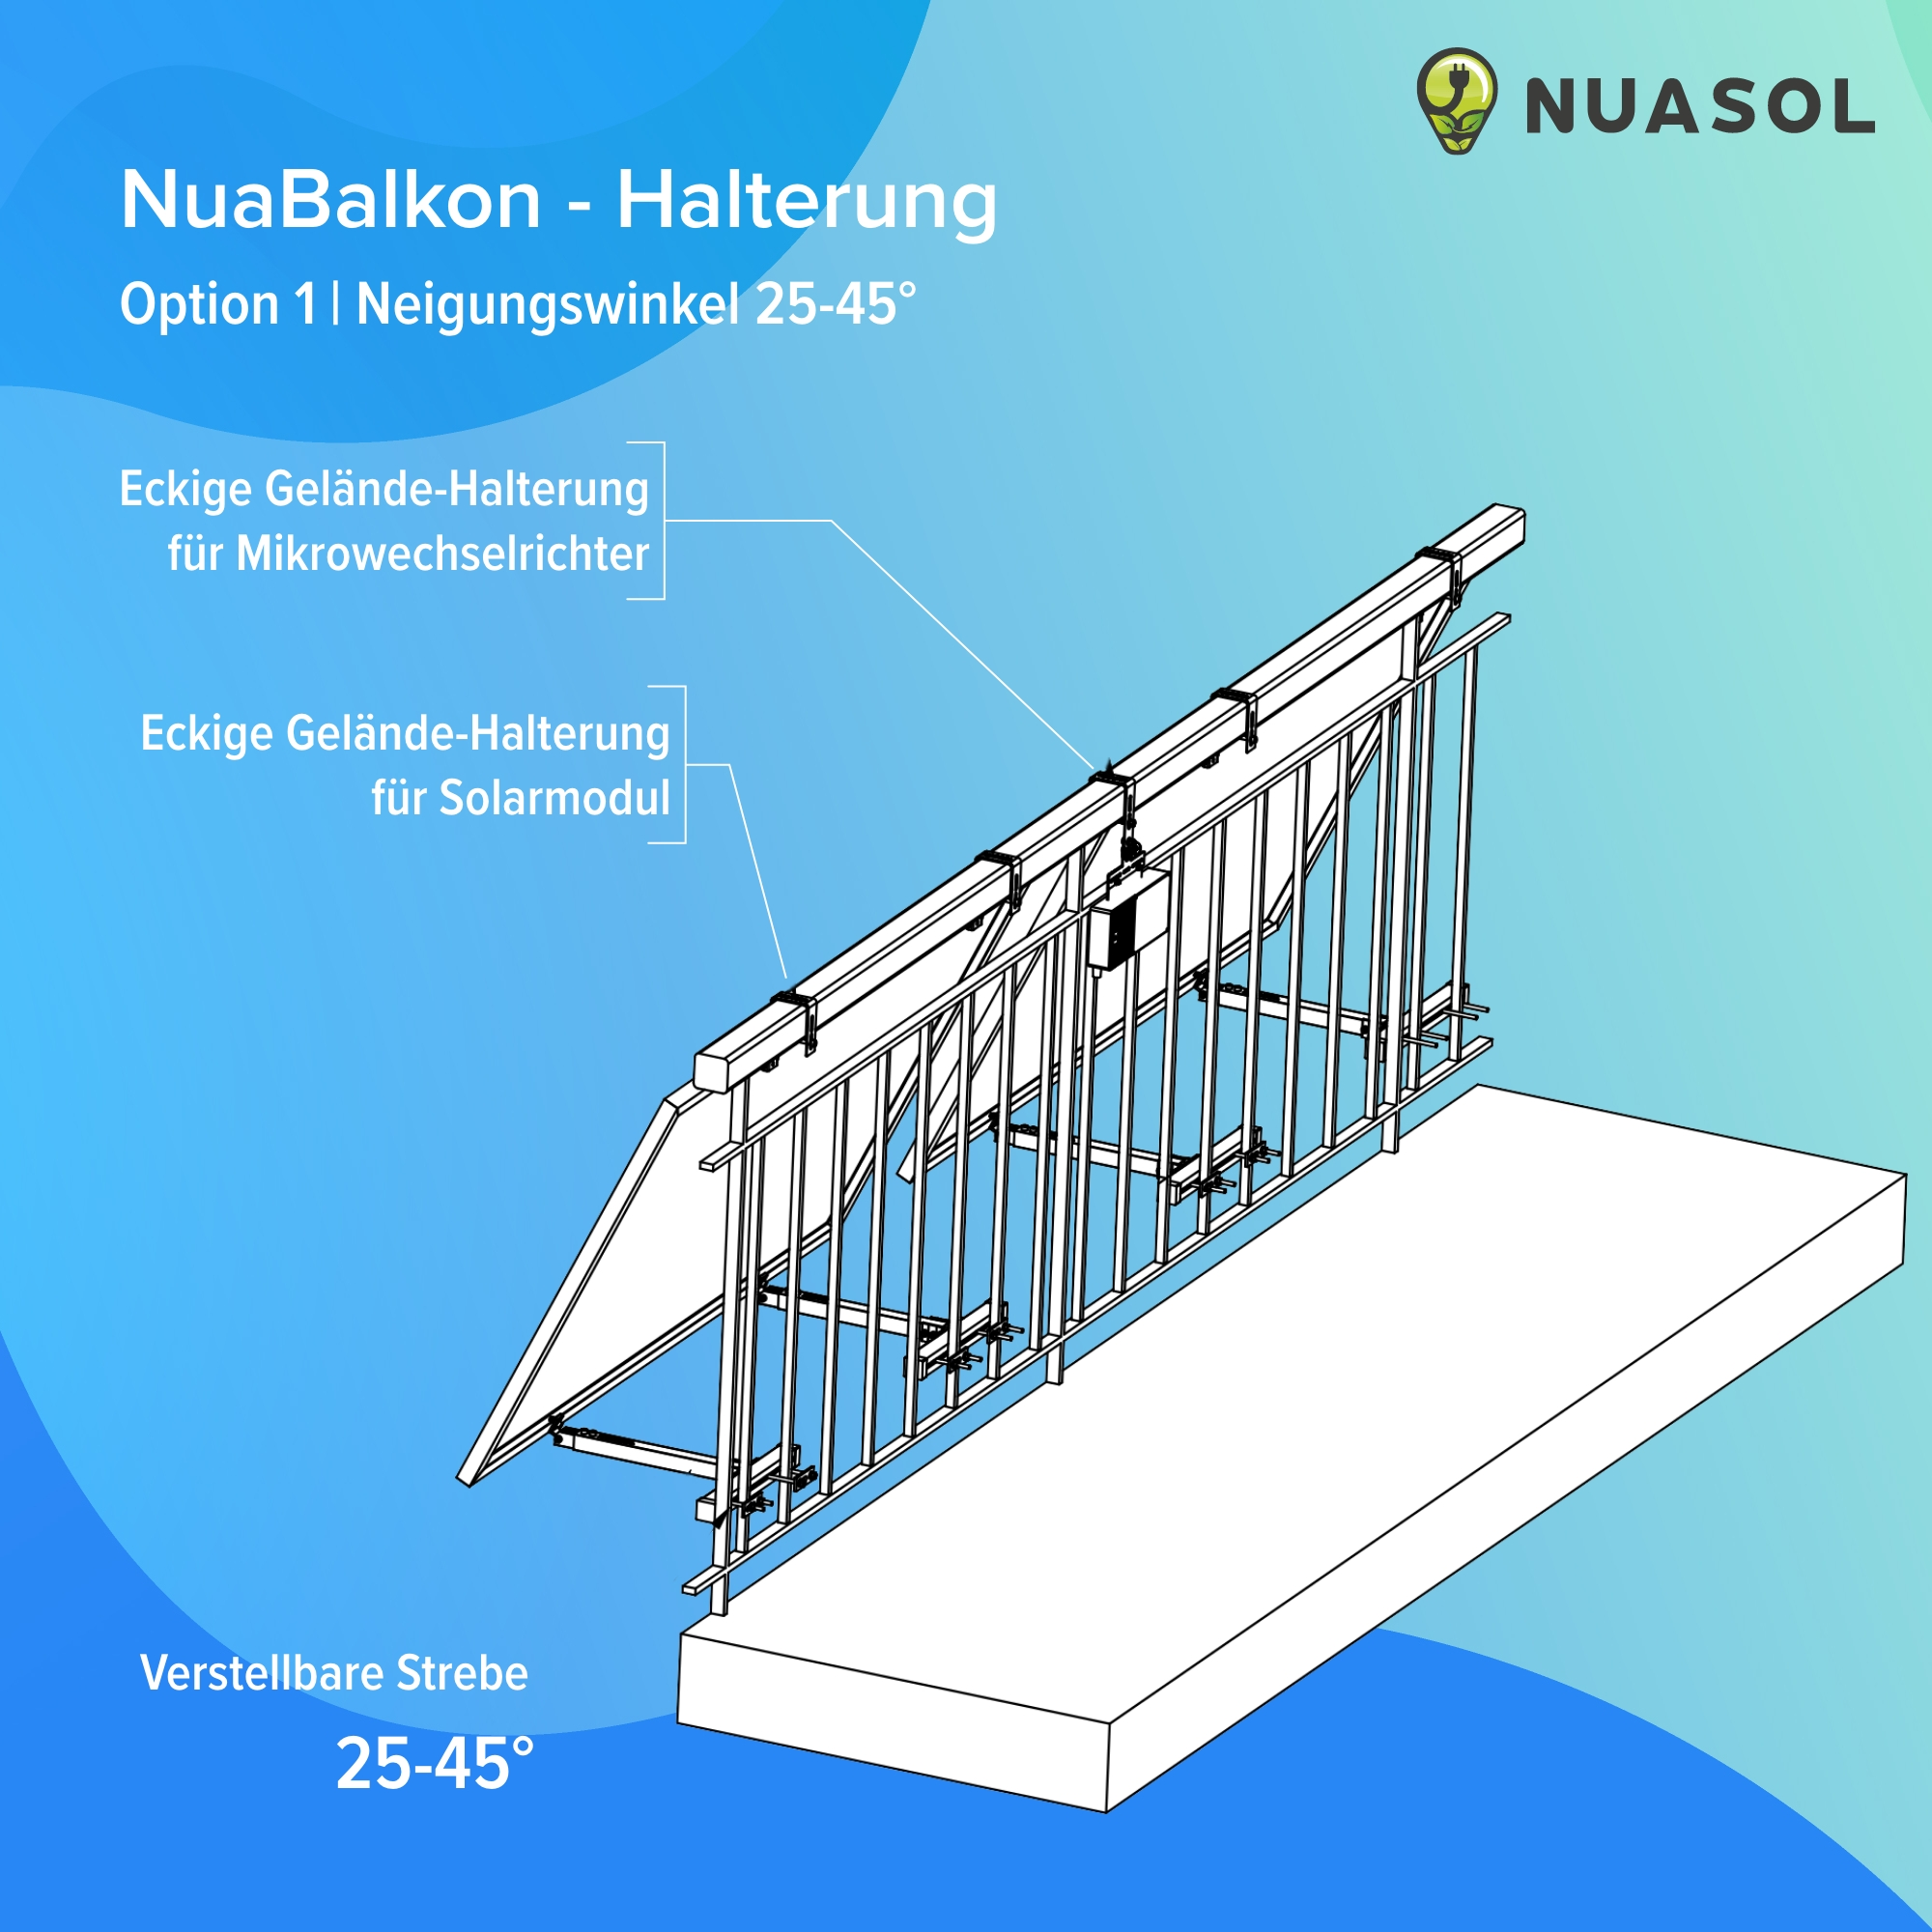 2 Solarmodule Balkonkraftwerkhalterung Photovoltaik, NUASOL Geländer Silber Befestigung